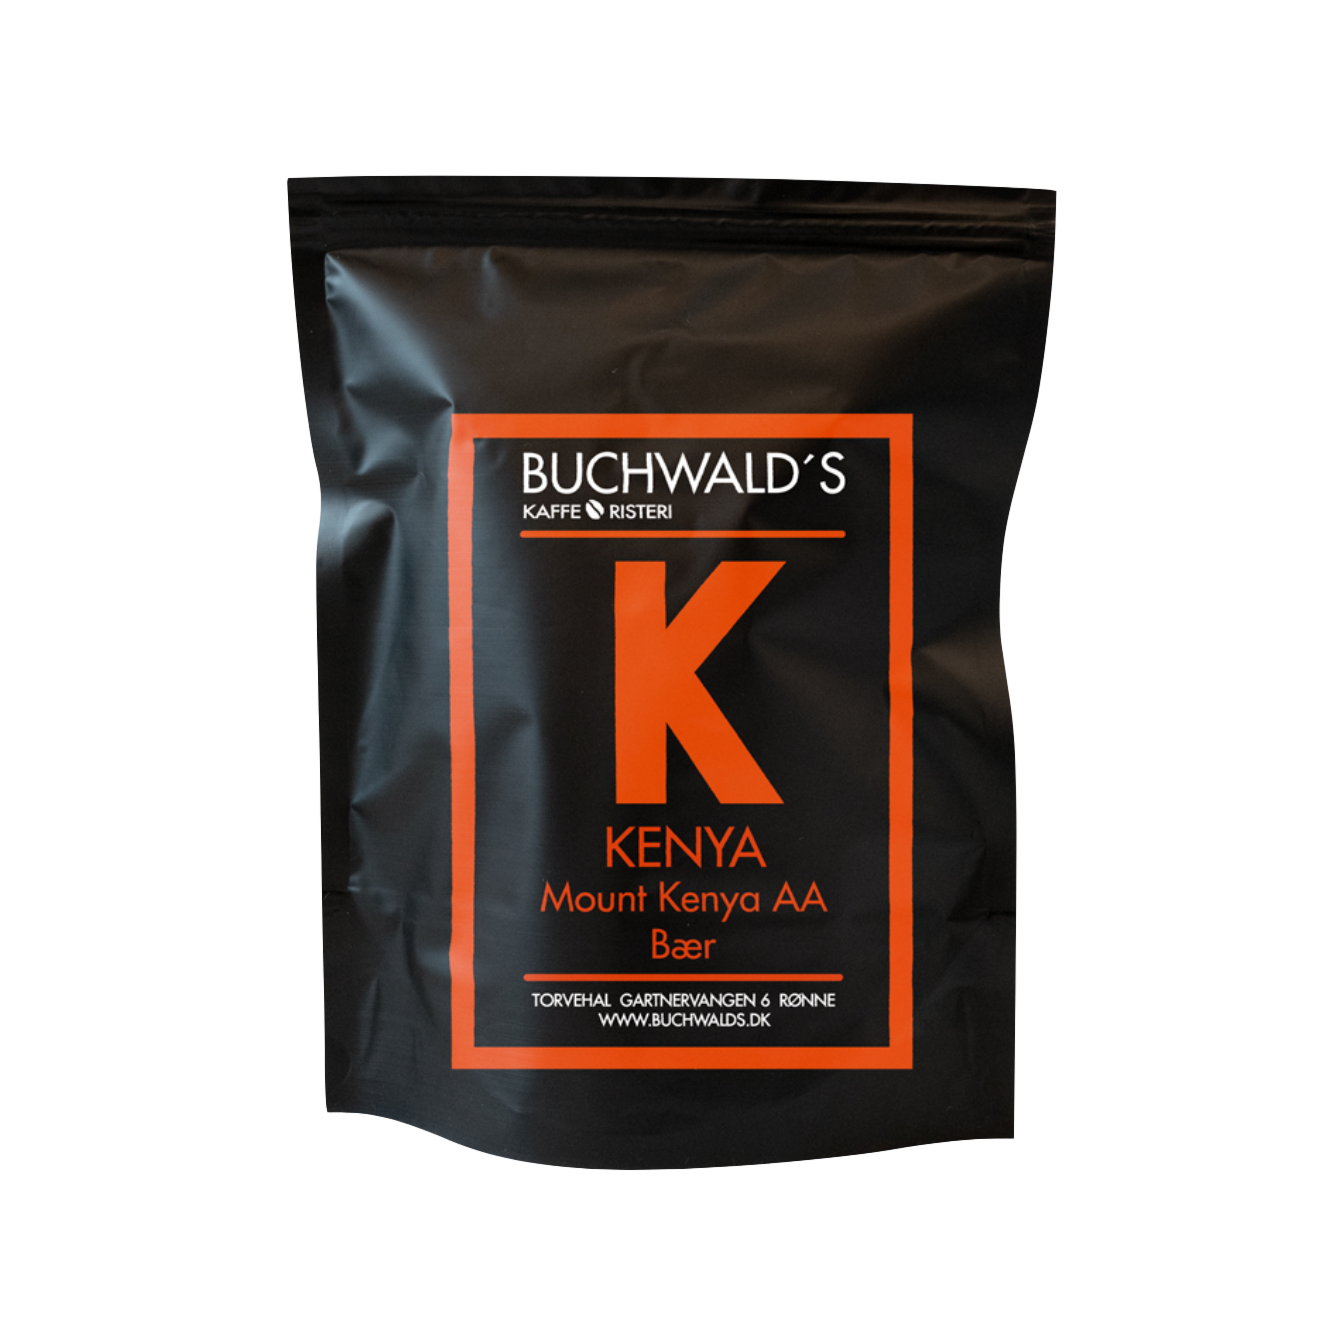 Kenya Kaffe